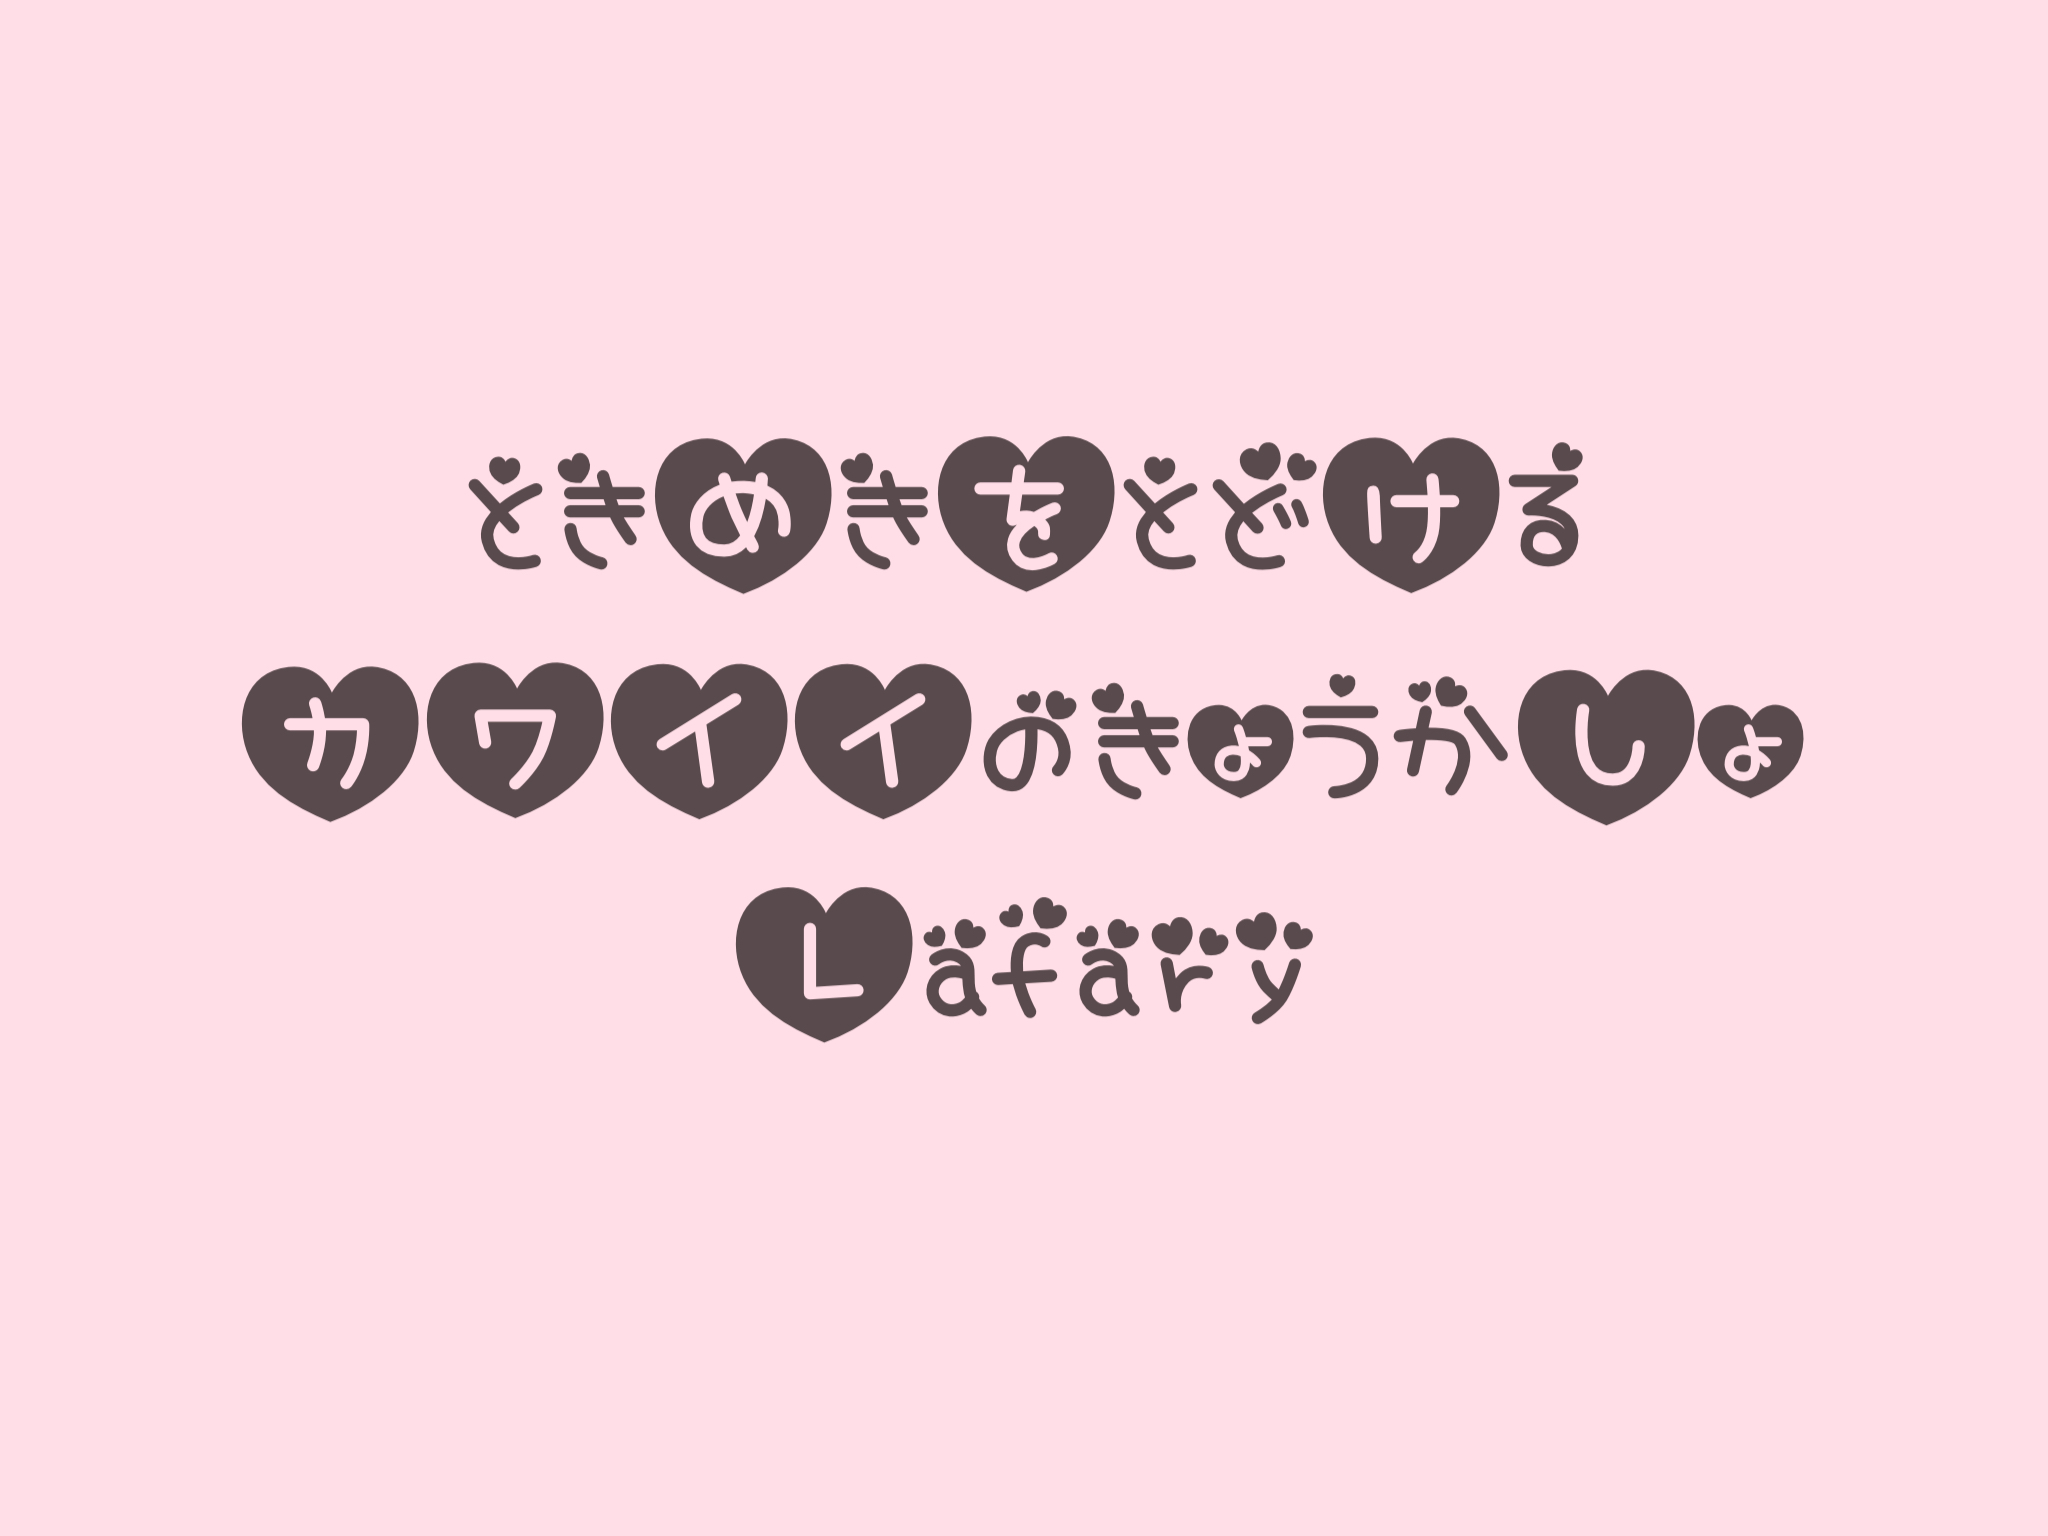 無料 商用okを厳選 おすすめの可愛い日本語フォント40種類 Lafary ラファリー ときめきを届けるかわいいの教科書